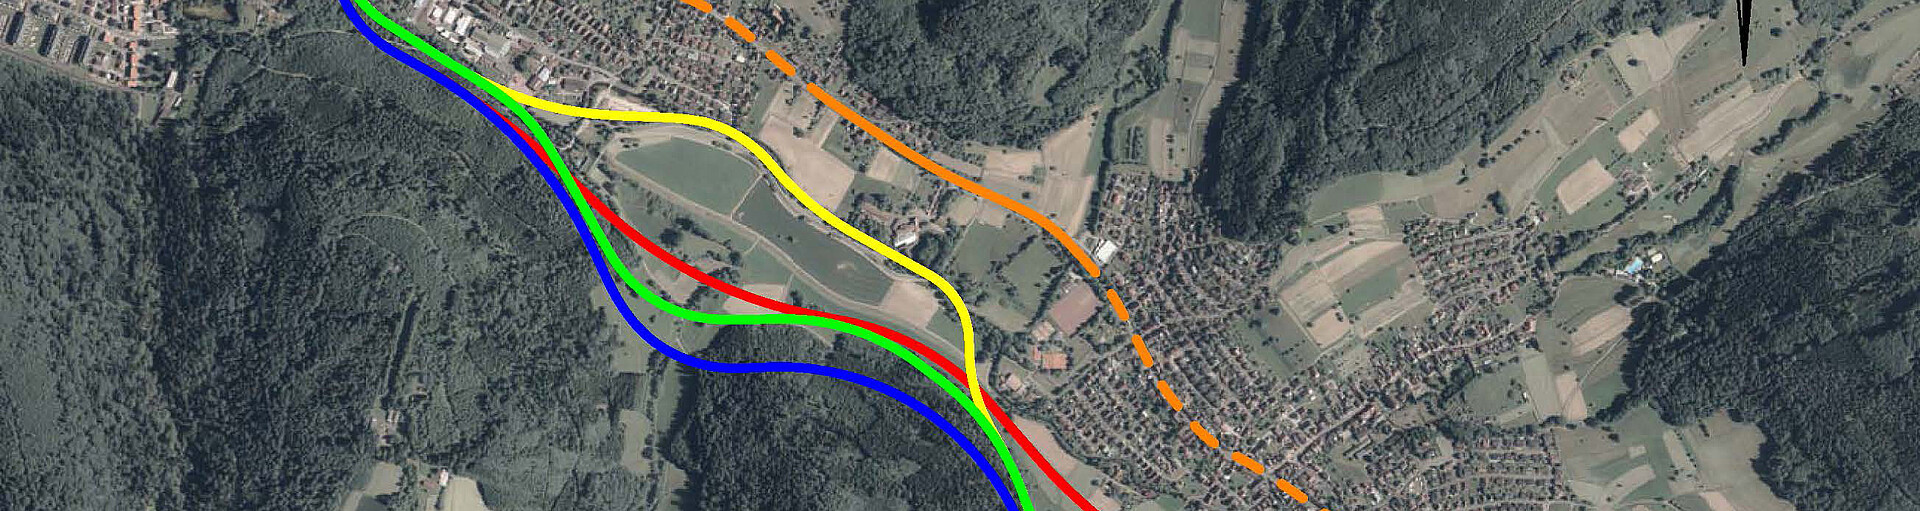 Ein Plan für die Ortsumfahrung Lahr - Kuhbach